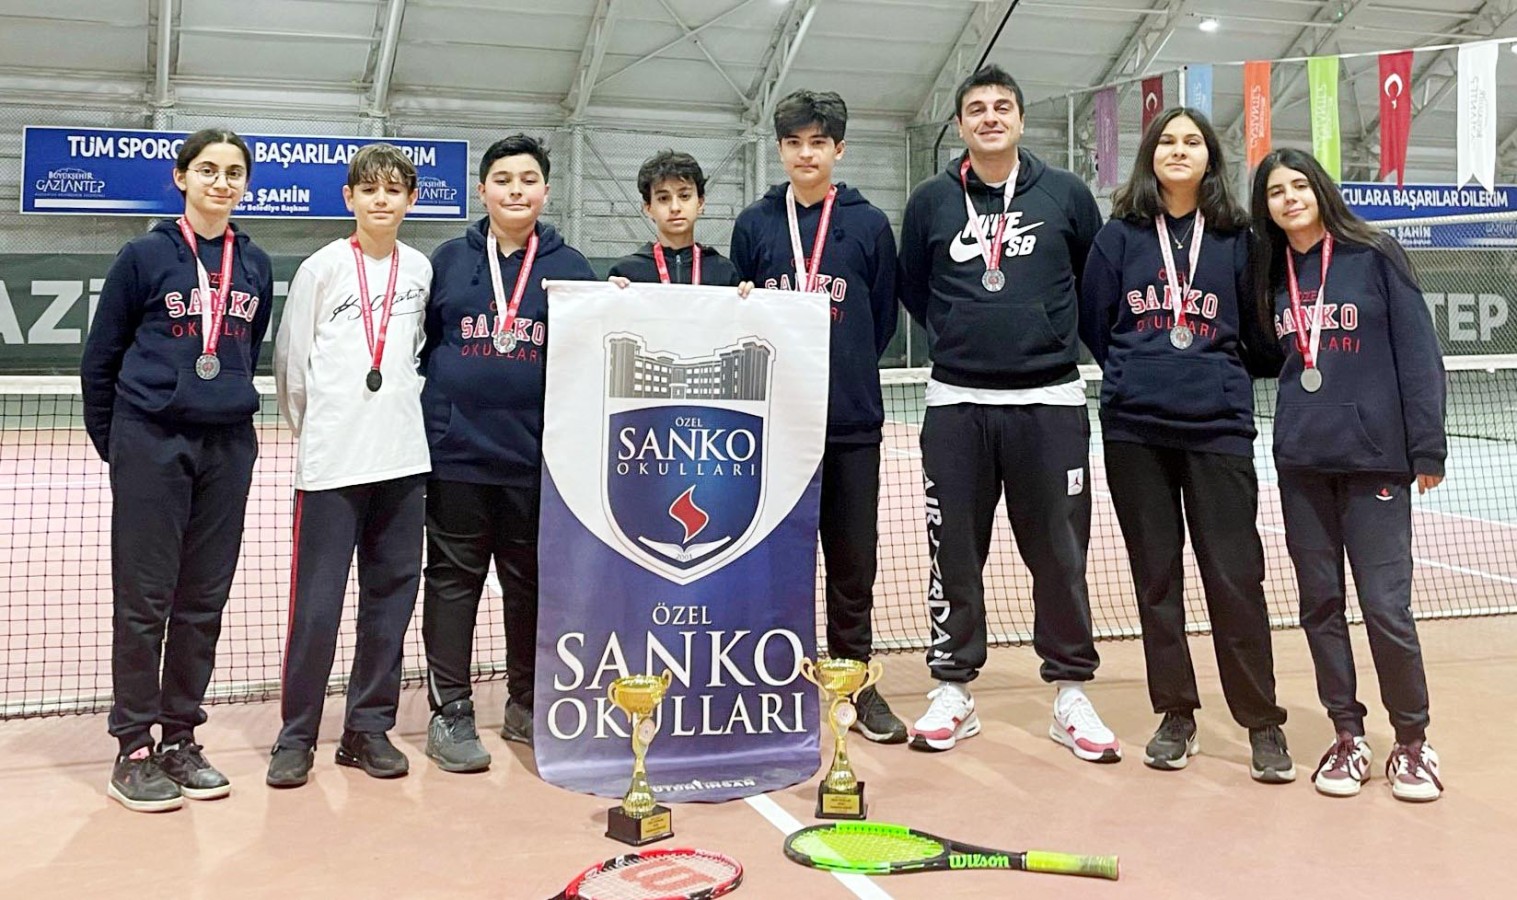 Sanko öğrencilerinin tenis başarısı;